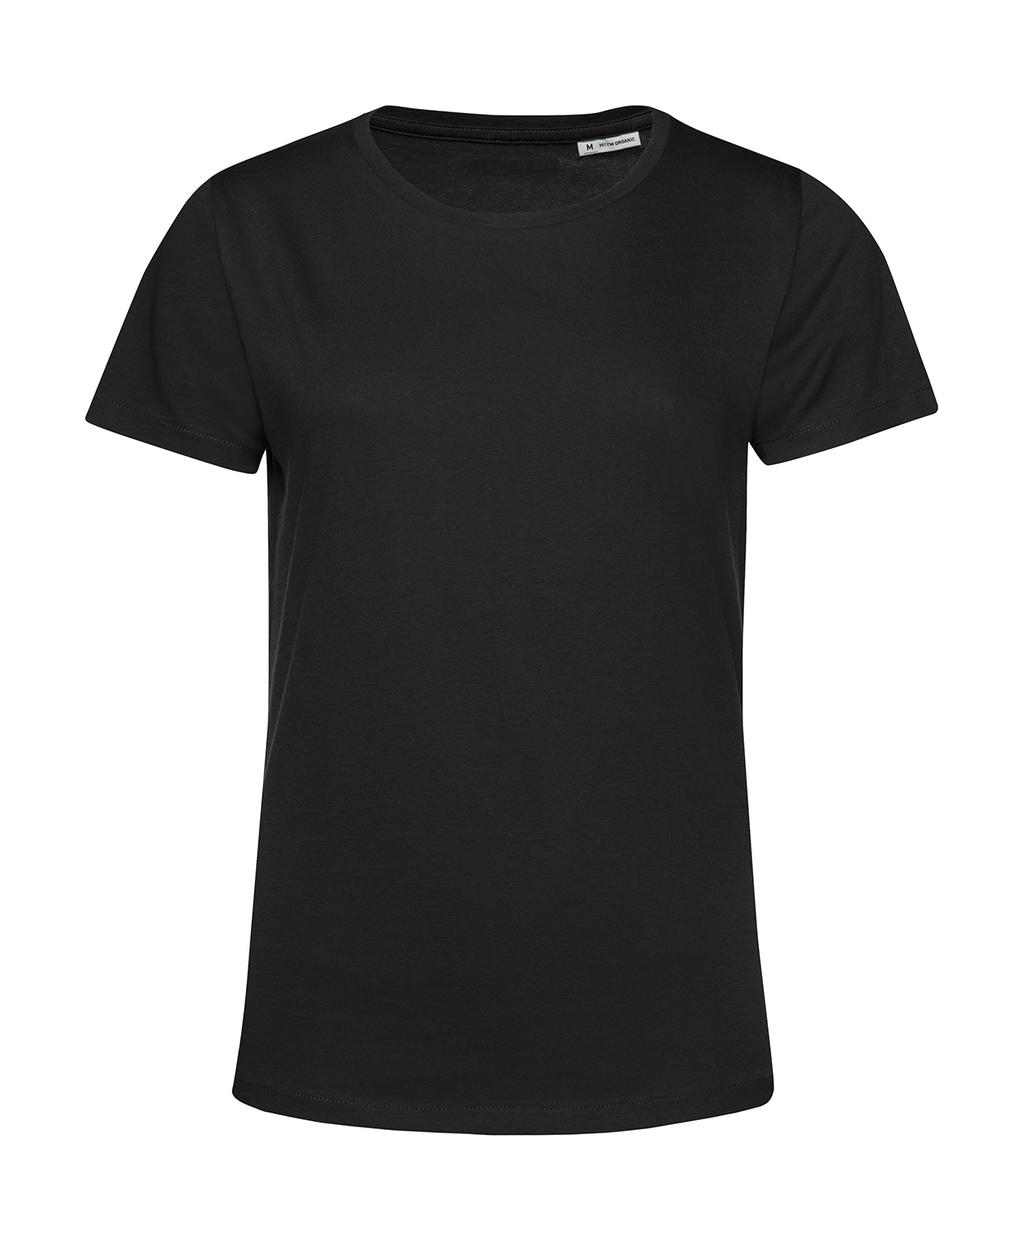 Tričko dámské BC Organic Inspire E150 - černé, XS